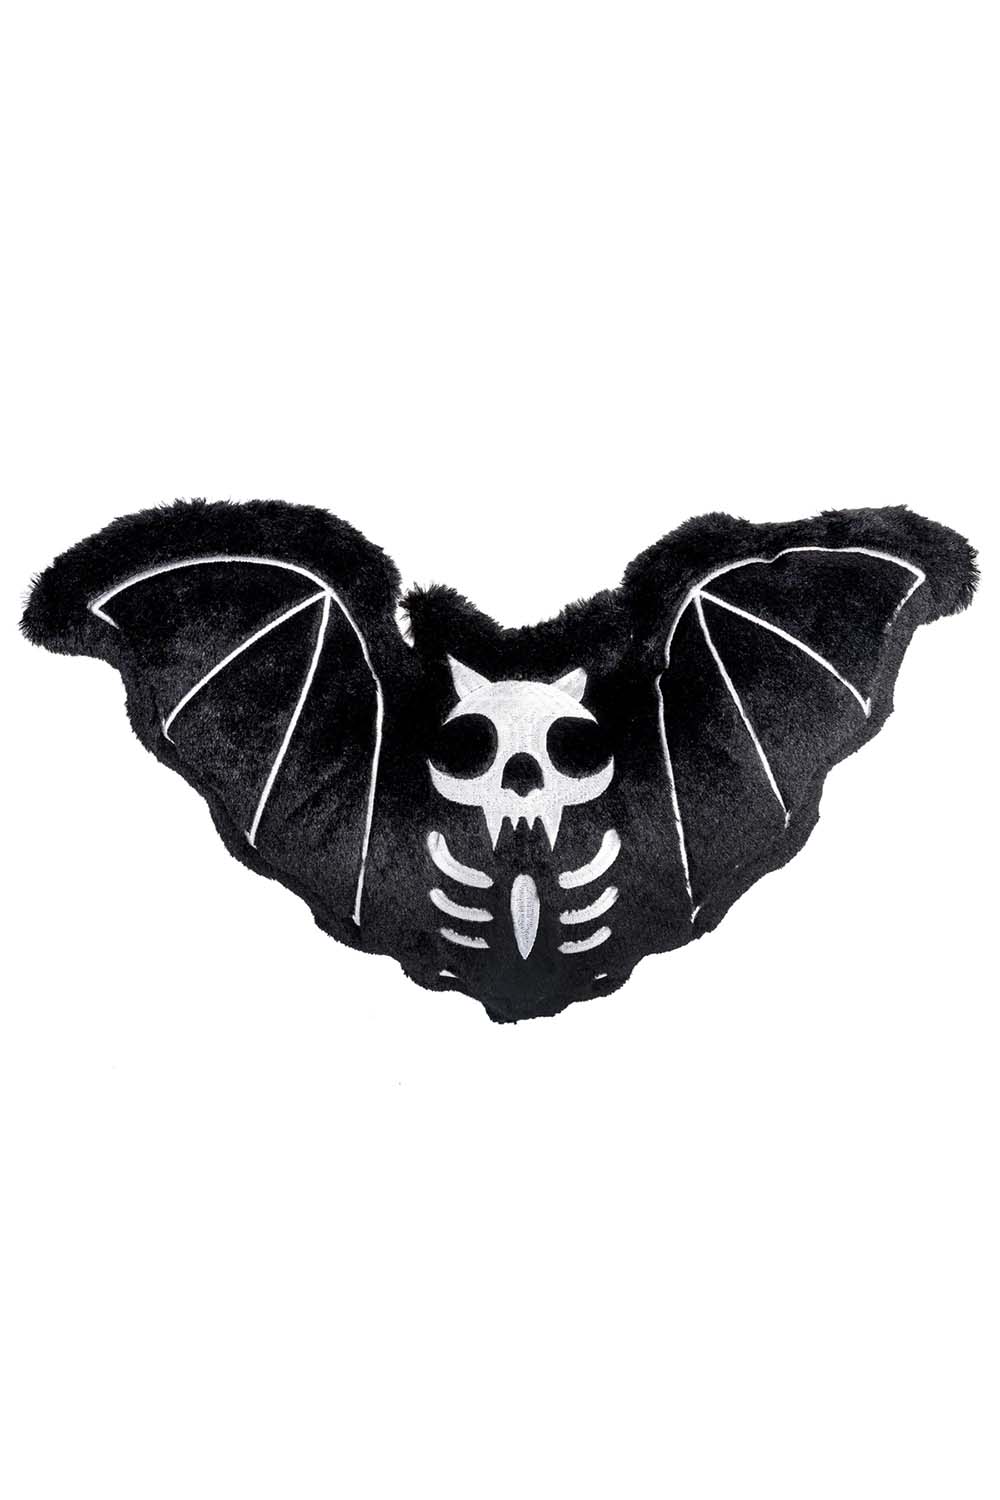 Furry Bat Pillow